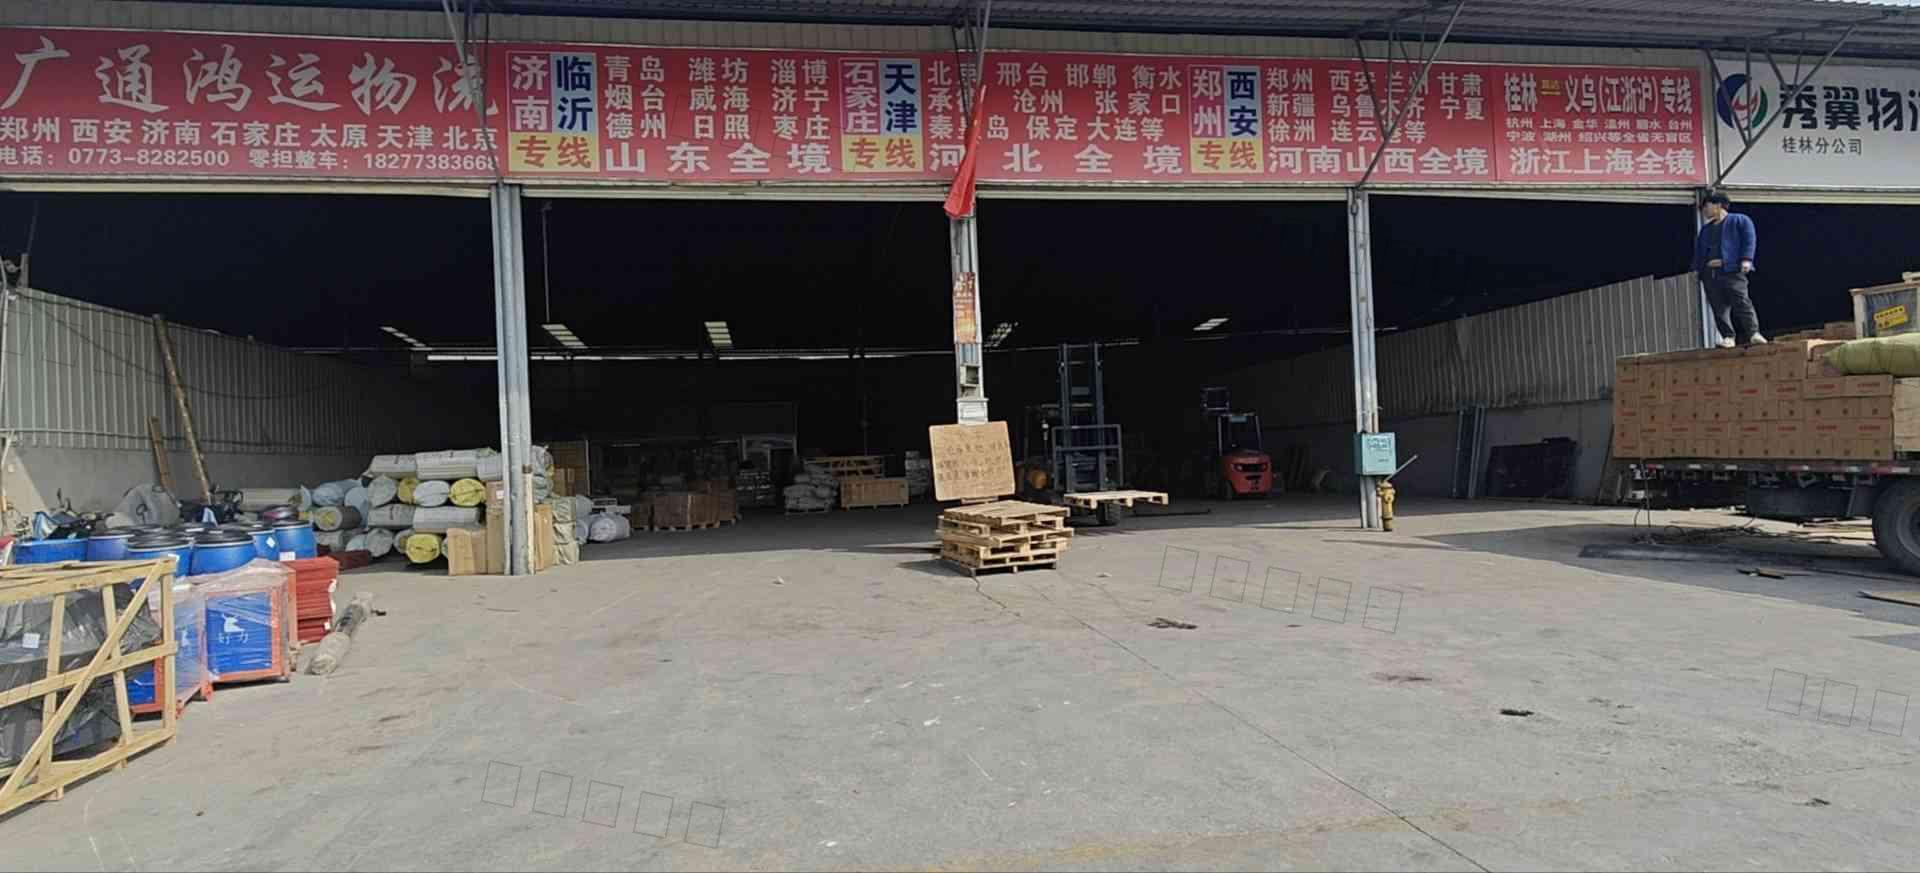 广西桂林市广通鸿运物流有限公司